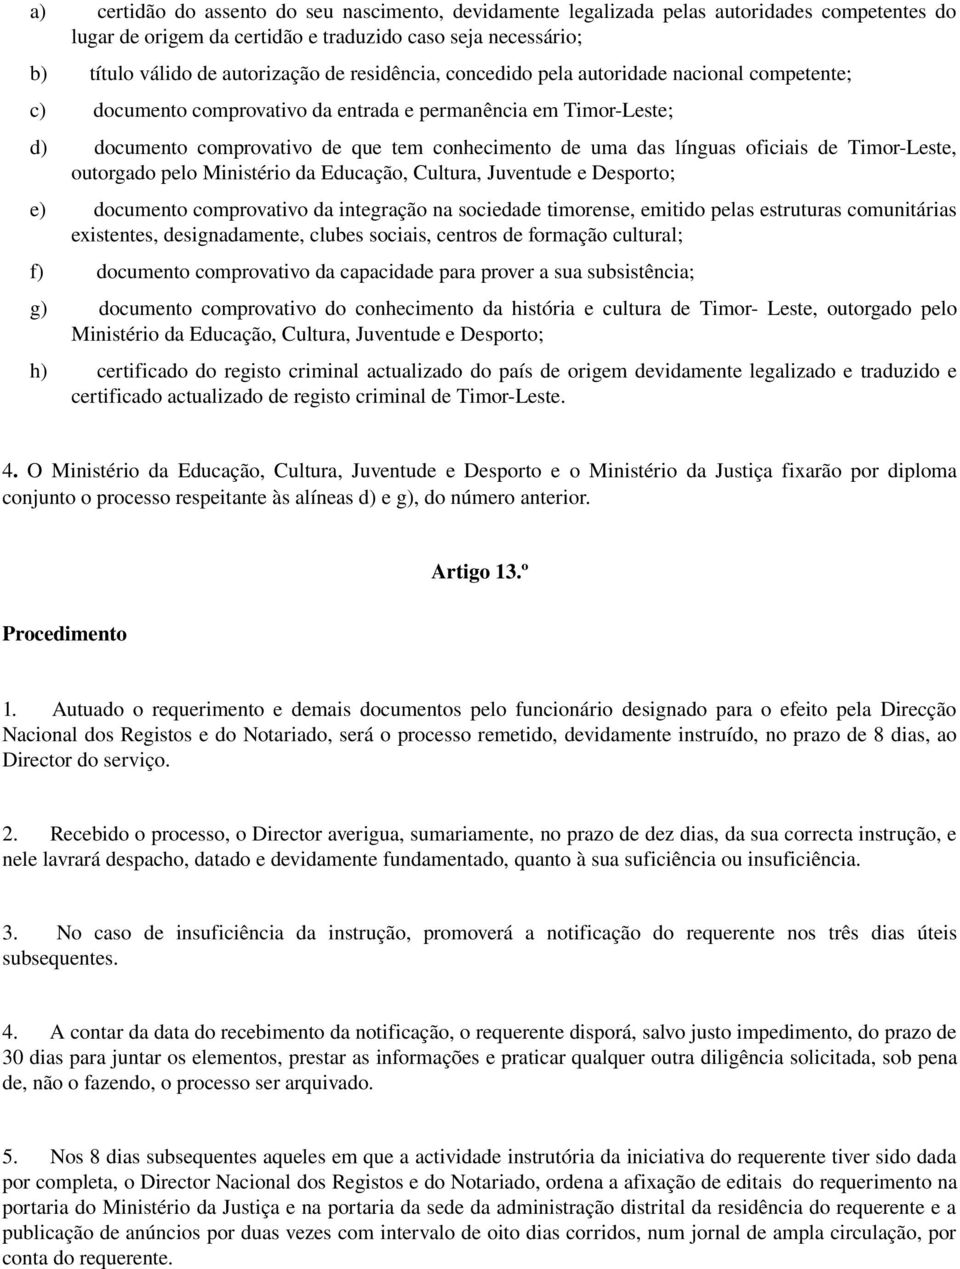 oficiais de Timor Leste, outorgado pelo Ministério da Educação, Cultura, Juventude e Desporto; e) documento comprovativo da integração na sociedade timorense, emitido pelas estruturas comunitárias